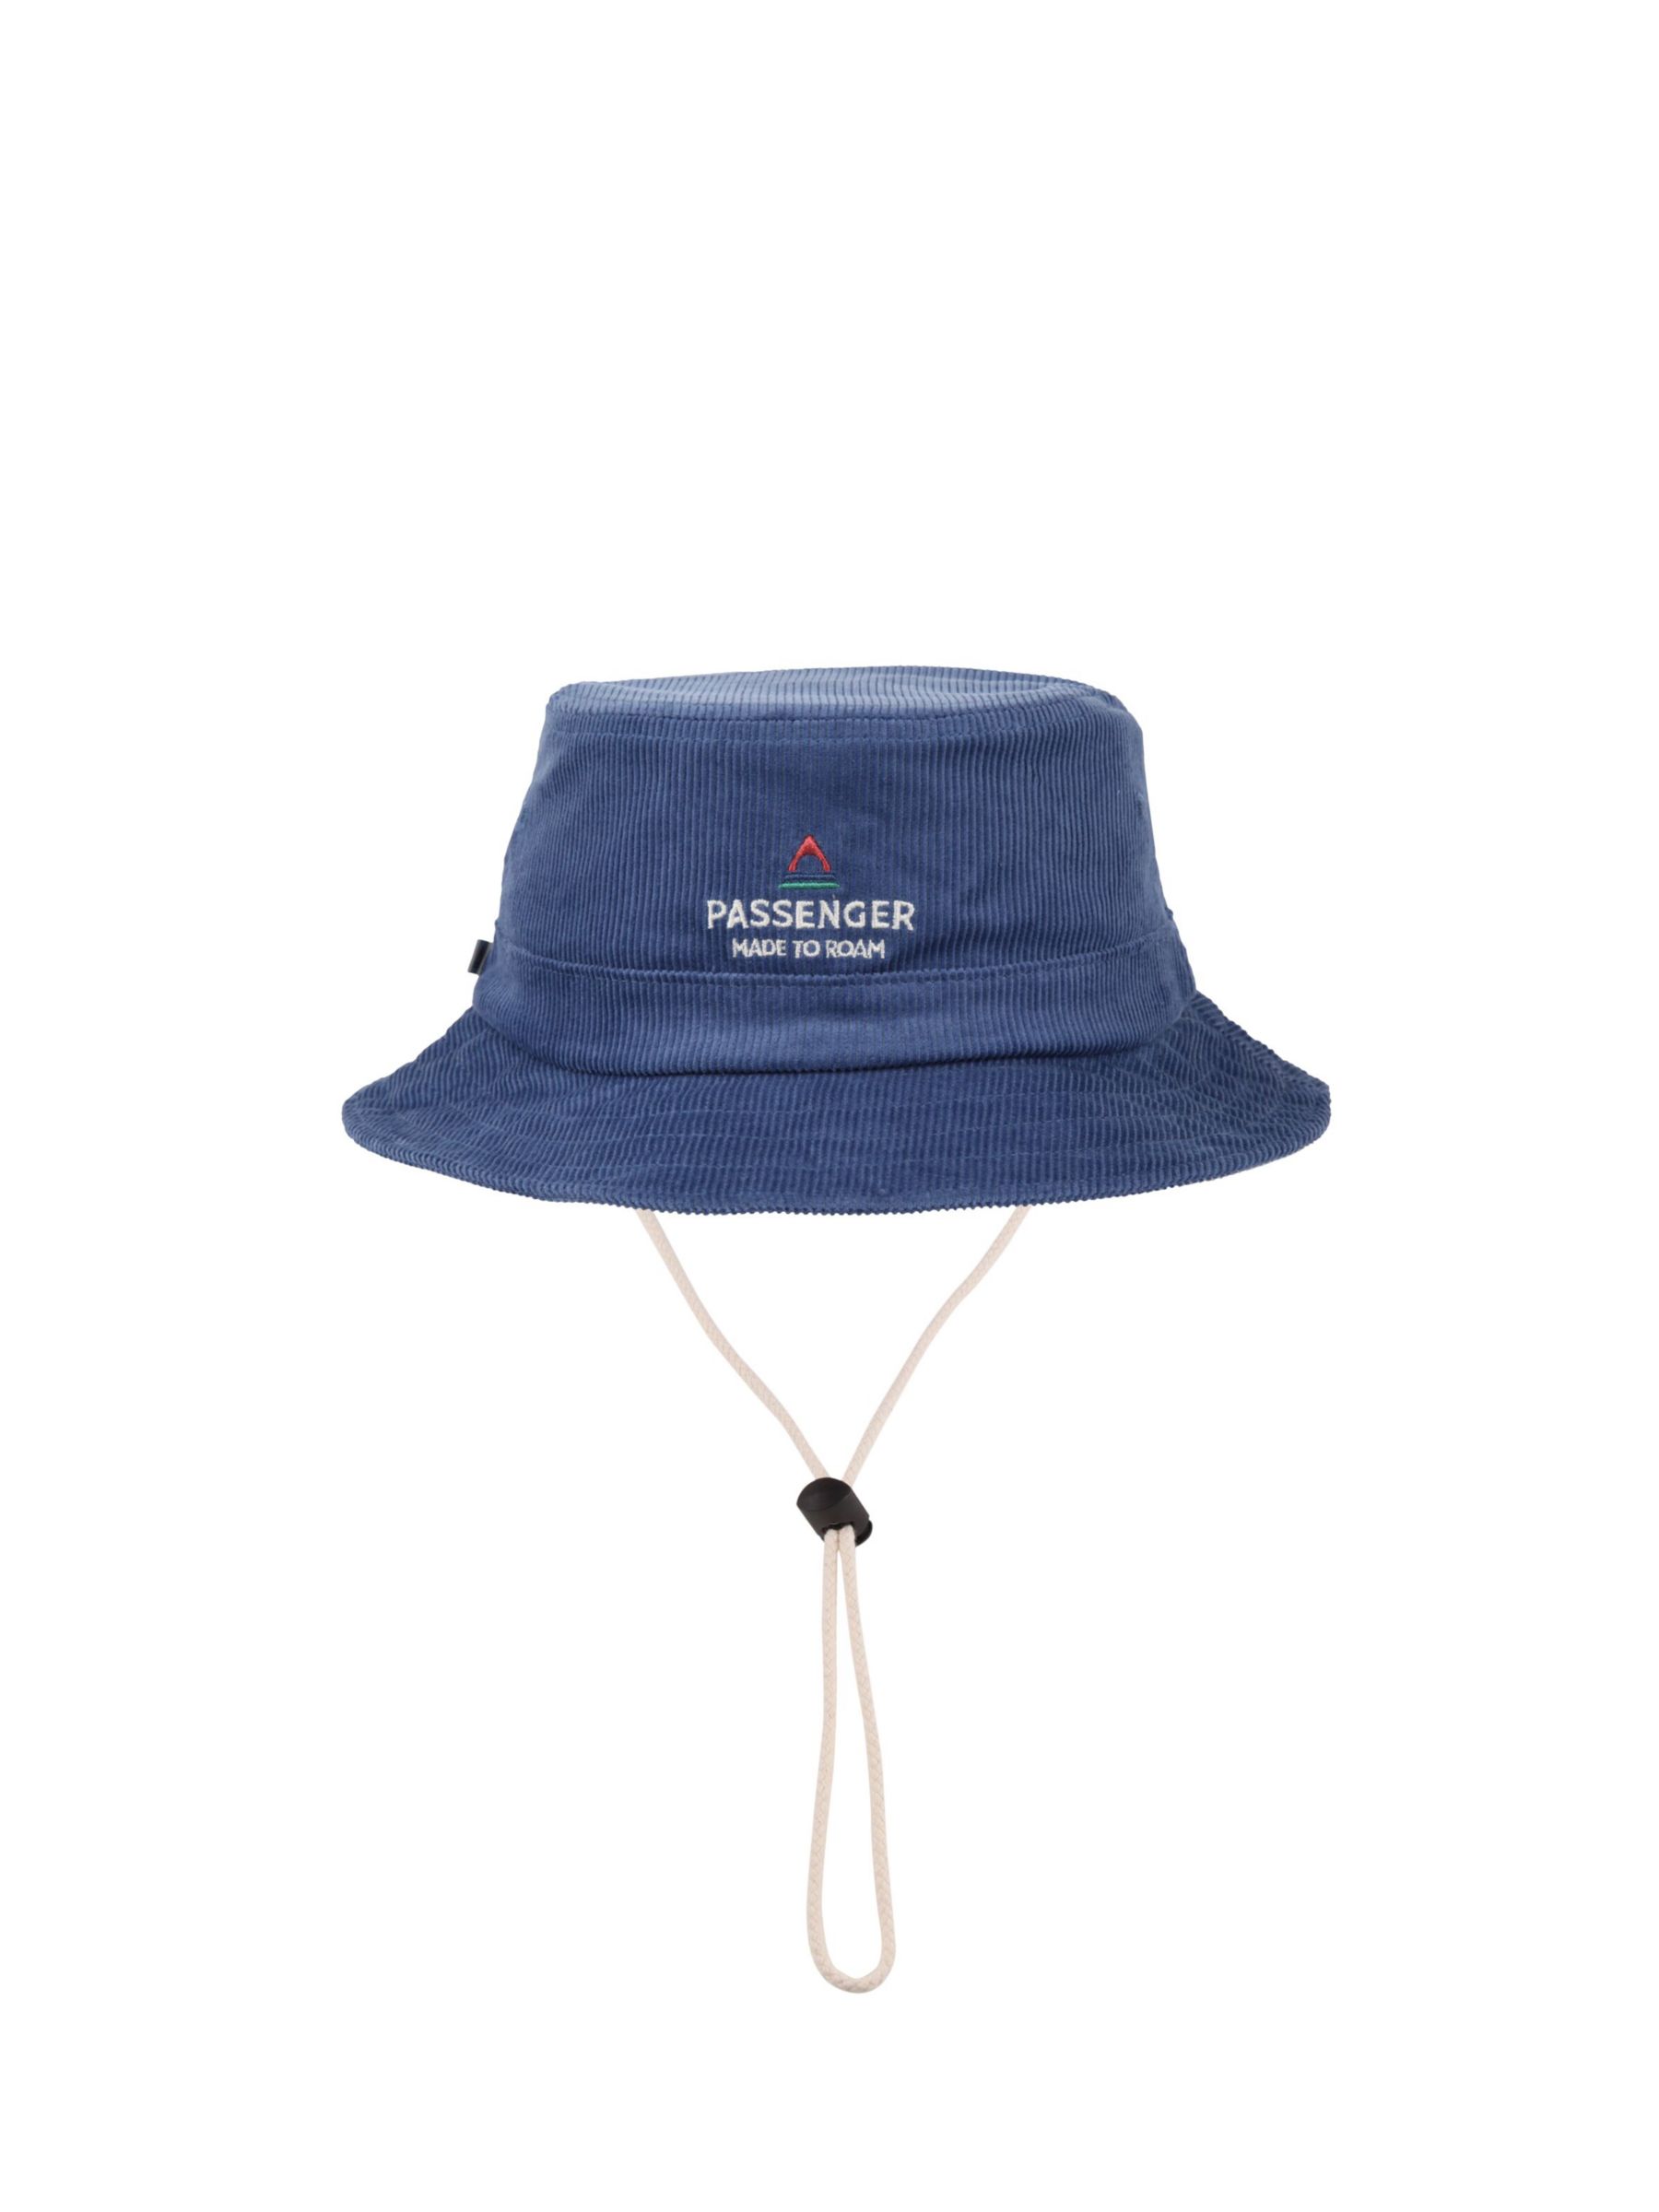 Buy Passenger Cord Adjustable Hat, Ash Blue Online at johnlewis.com